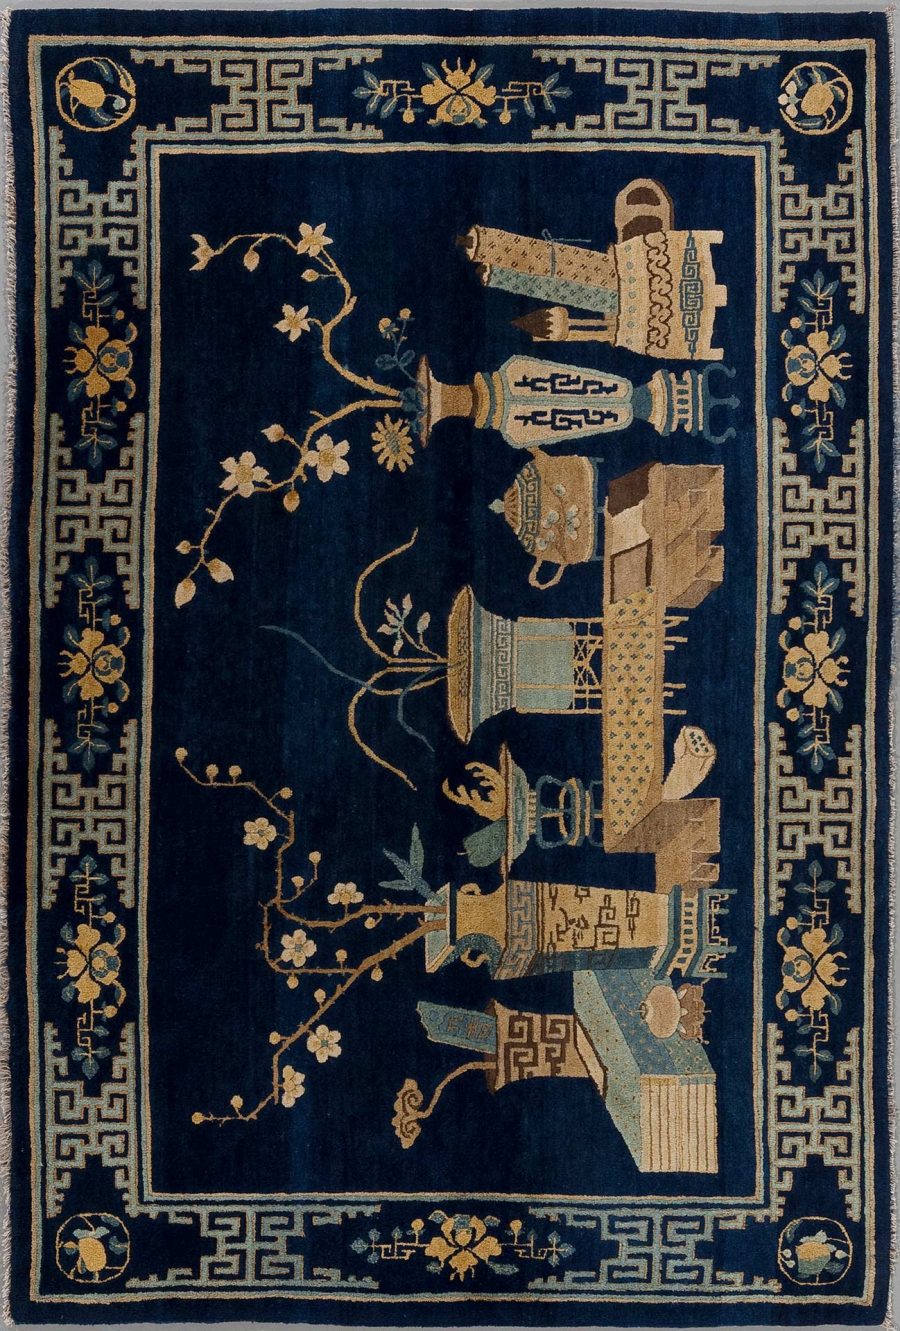 Antiker orientalischer Teppich mit dunkelblauem Hintergrund und traditioneller Verzierung, darunter geometrische Muster und florale Elemente in Beige- und Goldtönen mit einer Grenze im griechischen Schlüsseldesign.